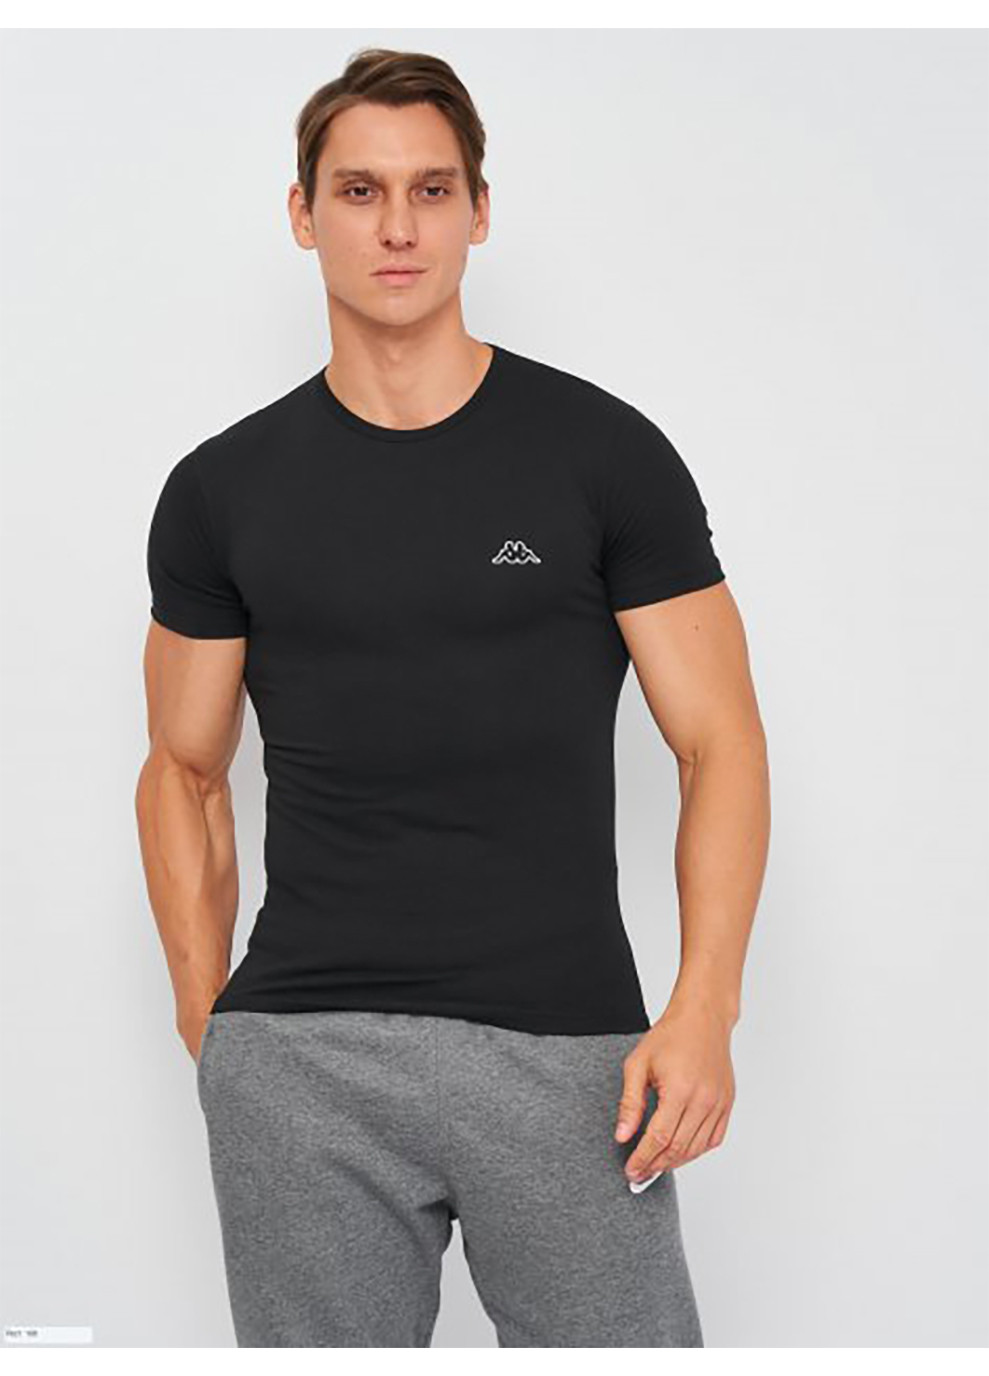 Черная футболка t-shirt mezza manica girocollo черный мужская l Kappa